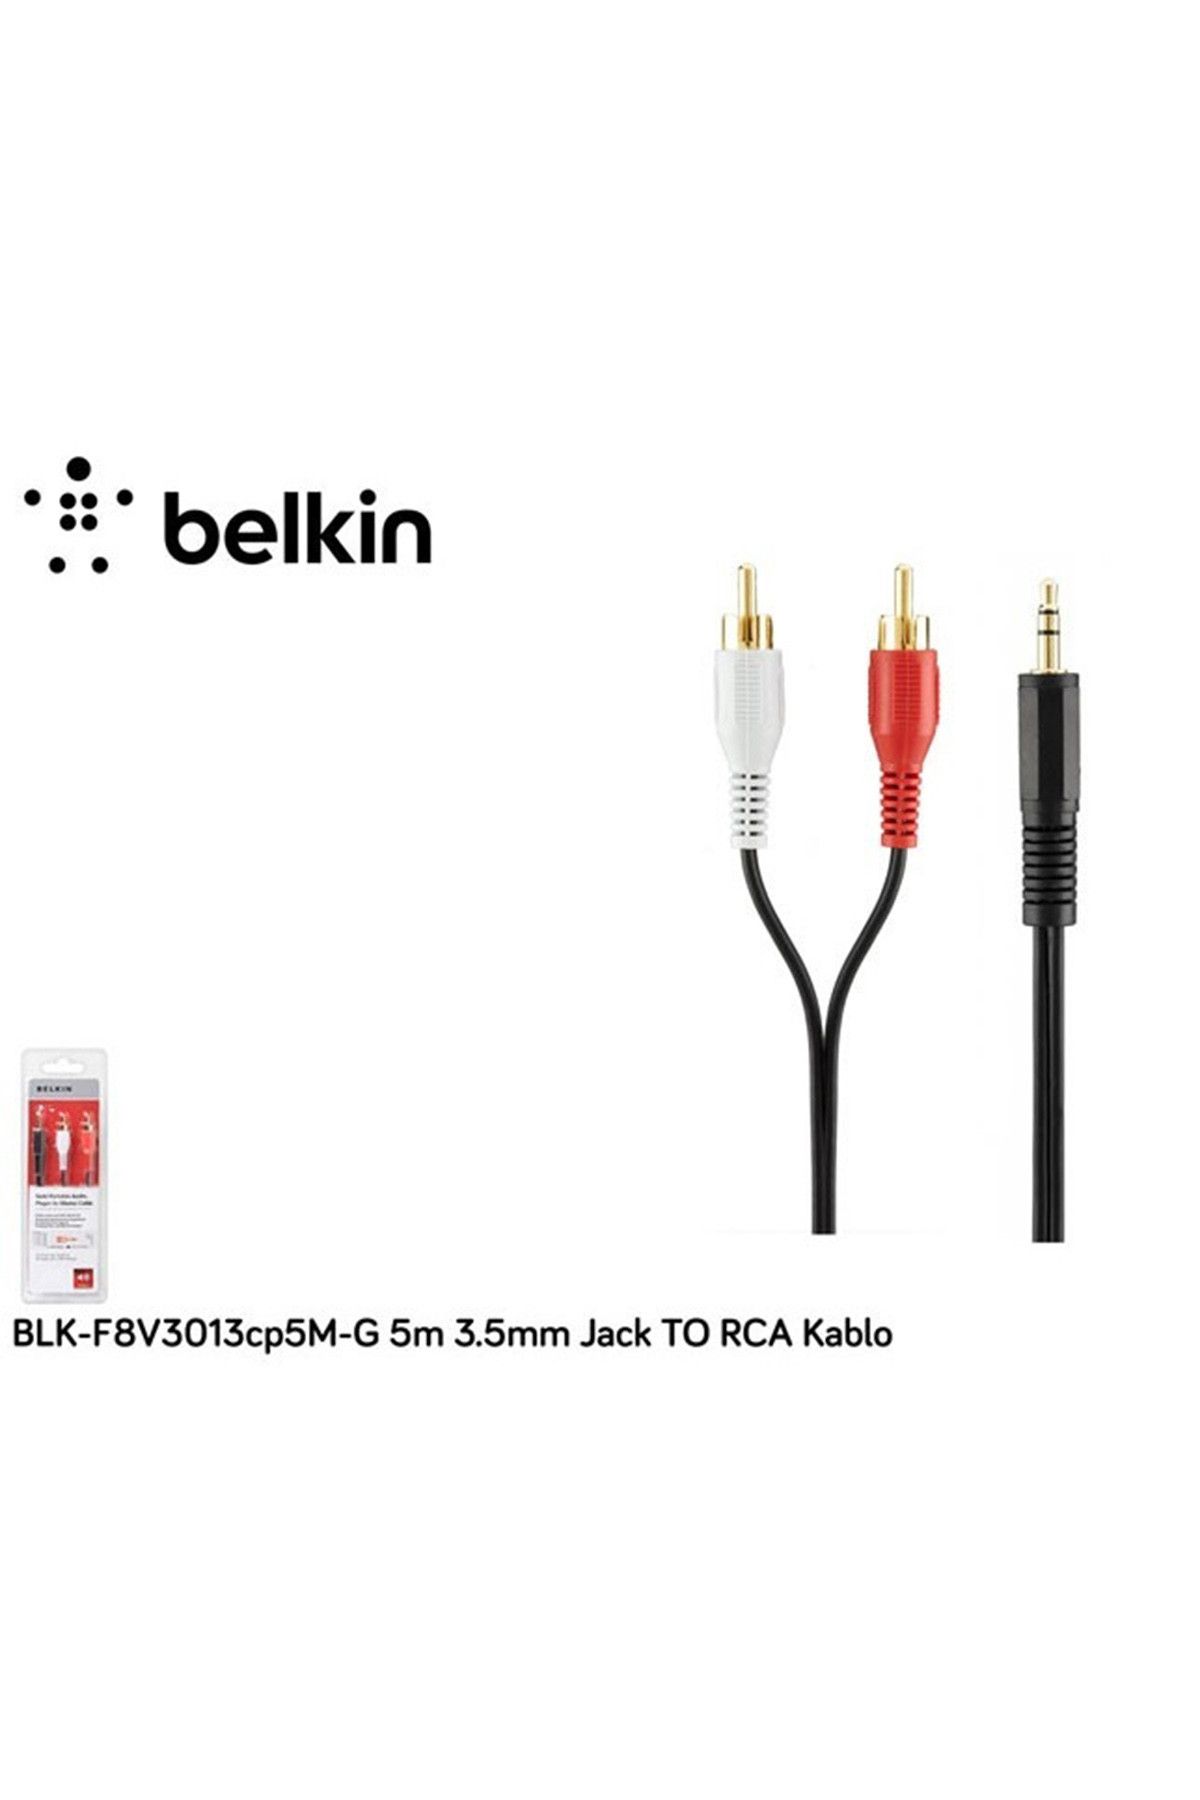 Belkin F8v3013cp5m-g 5m 3.5mm Jack To Rca Kablo